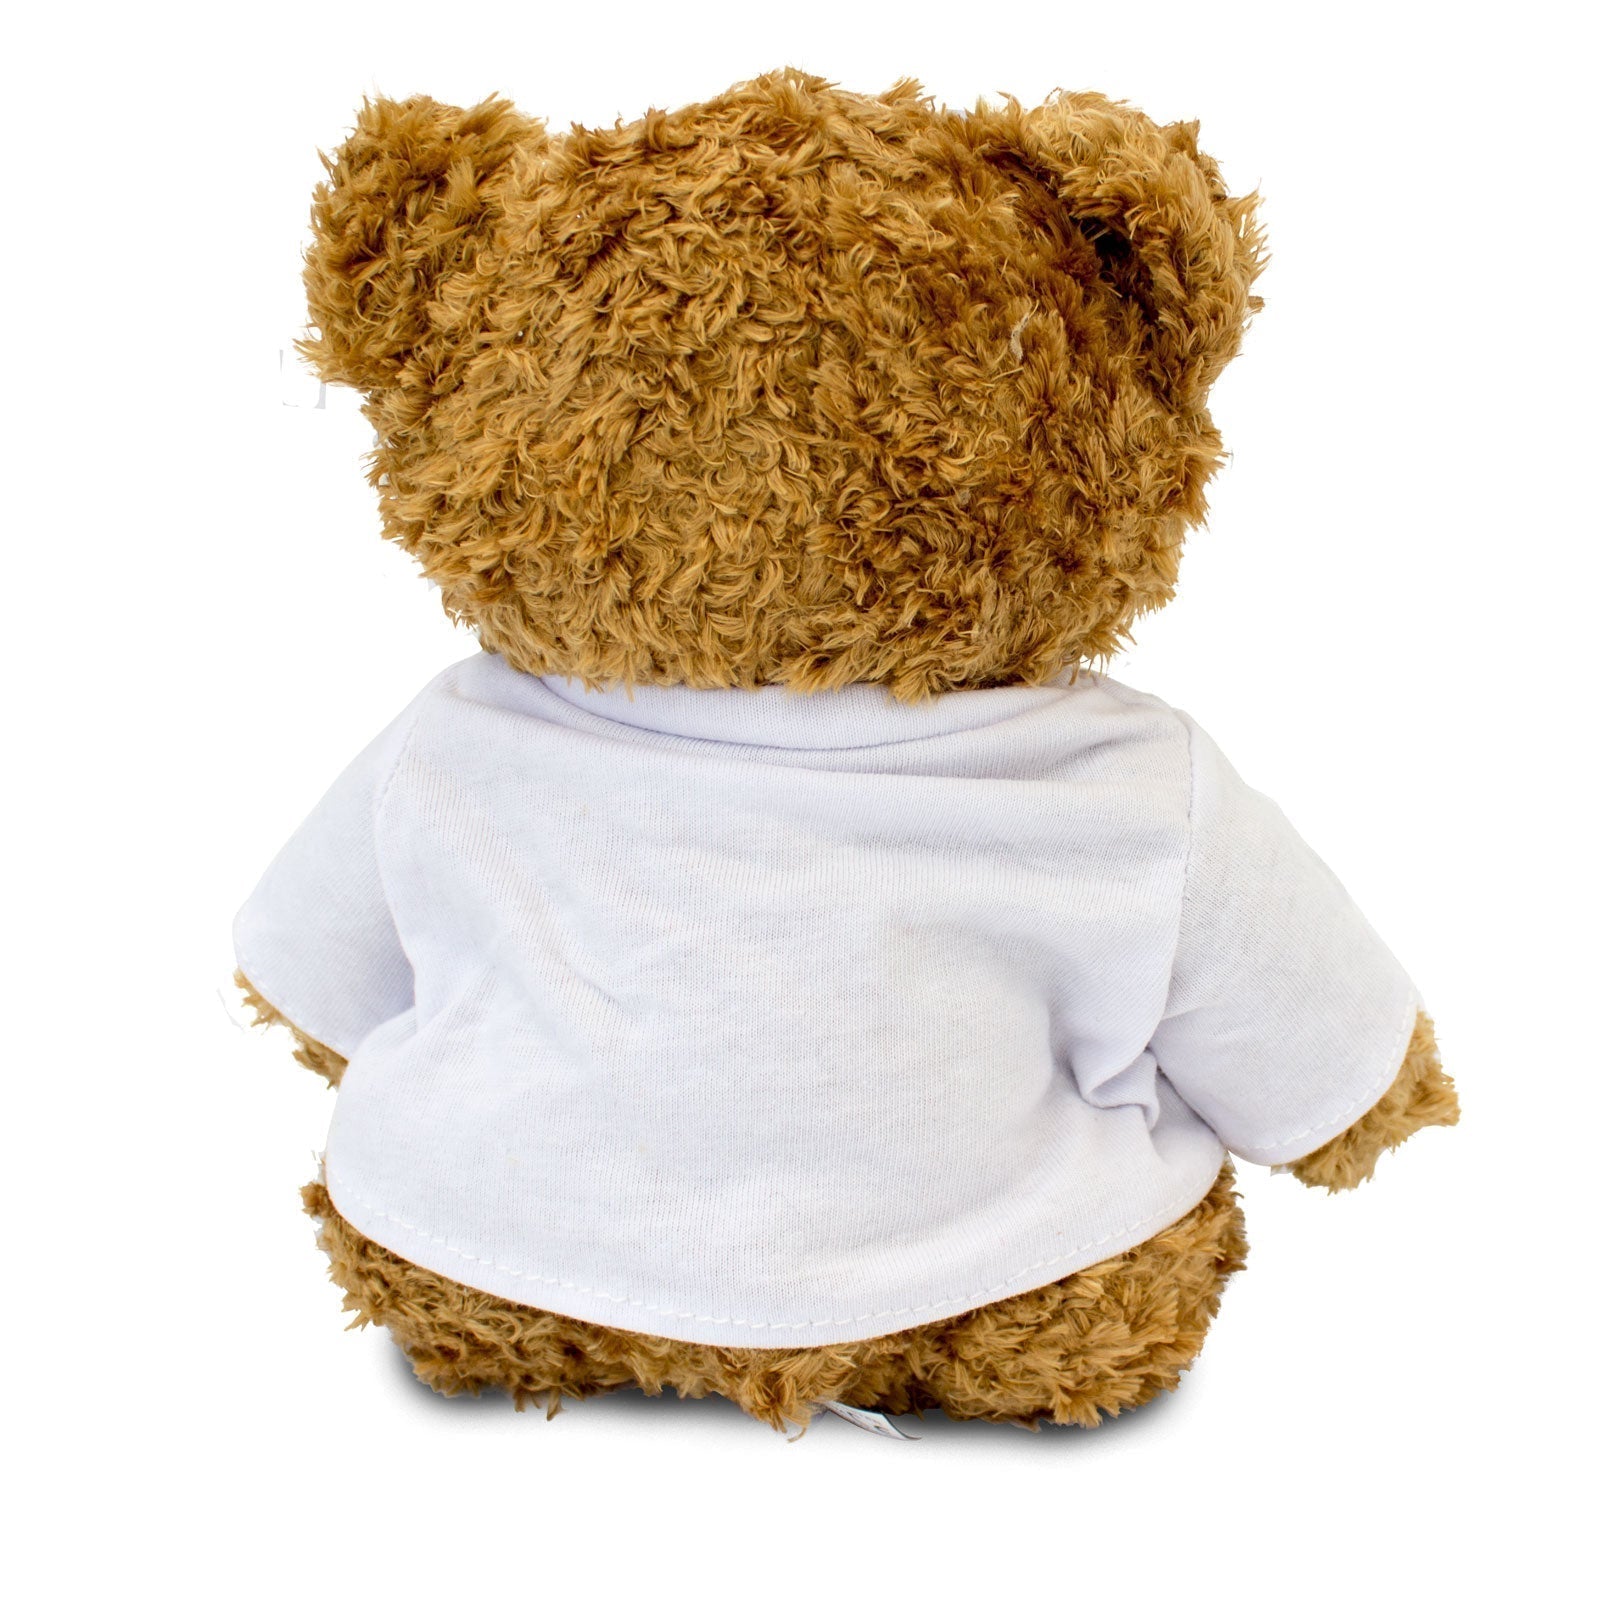 The Greatest Marketing Executive Ever - Teddy Bear